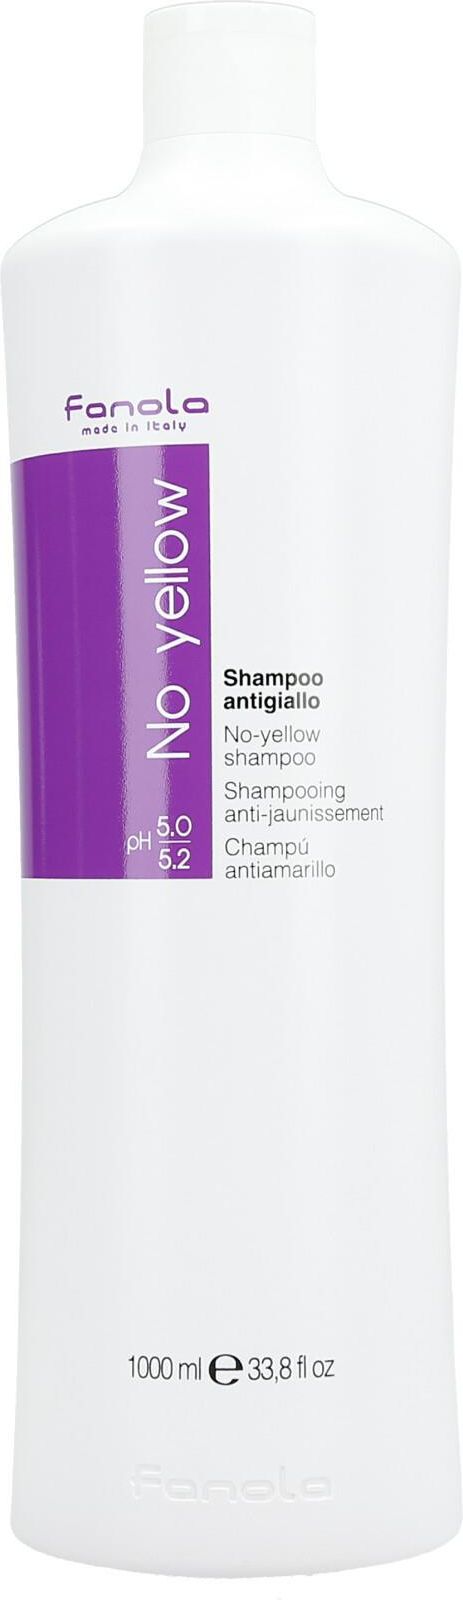 szampon przeciw żółtym włosom fanola